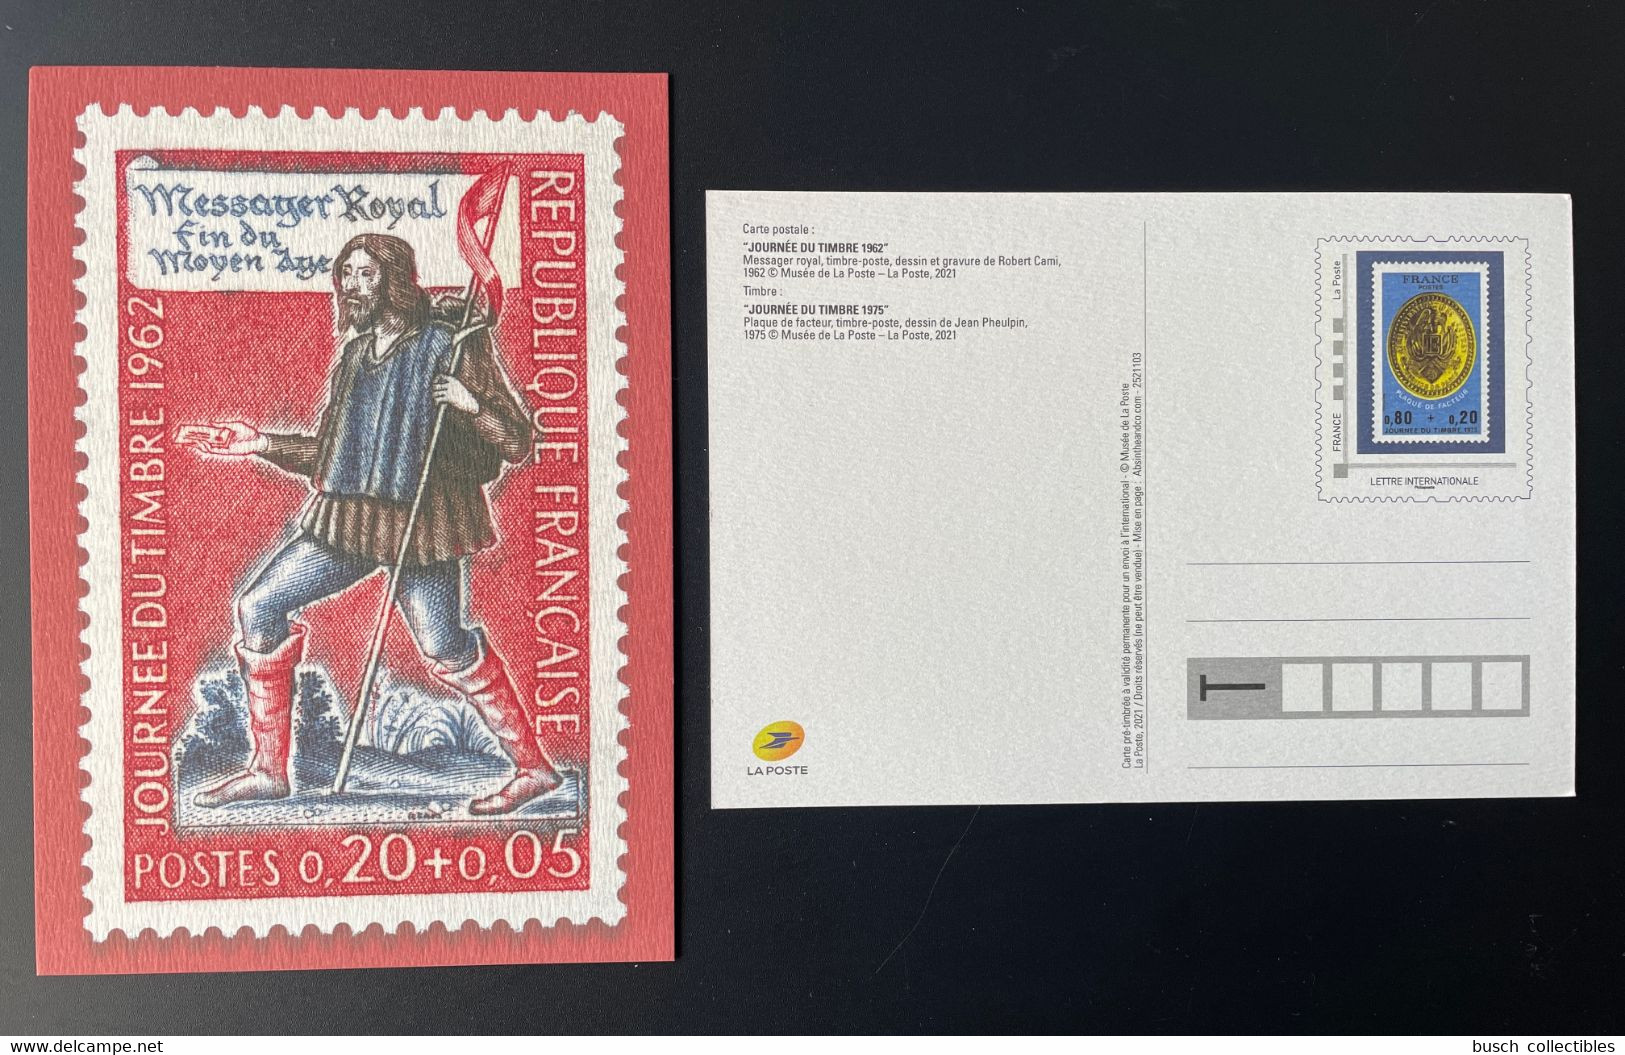 France 2021 - Carte Postale Entier Journée Du Timbre 1962 Messager Royal Fin Du Moyen Âge - Official Stationery